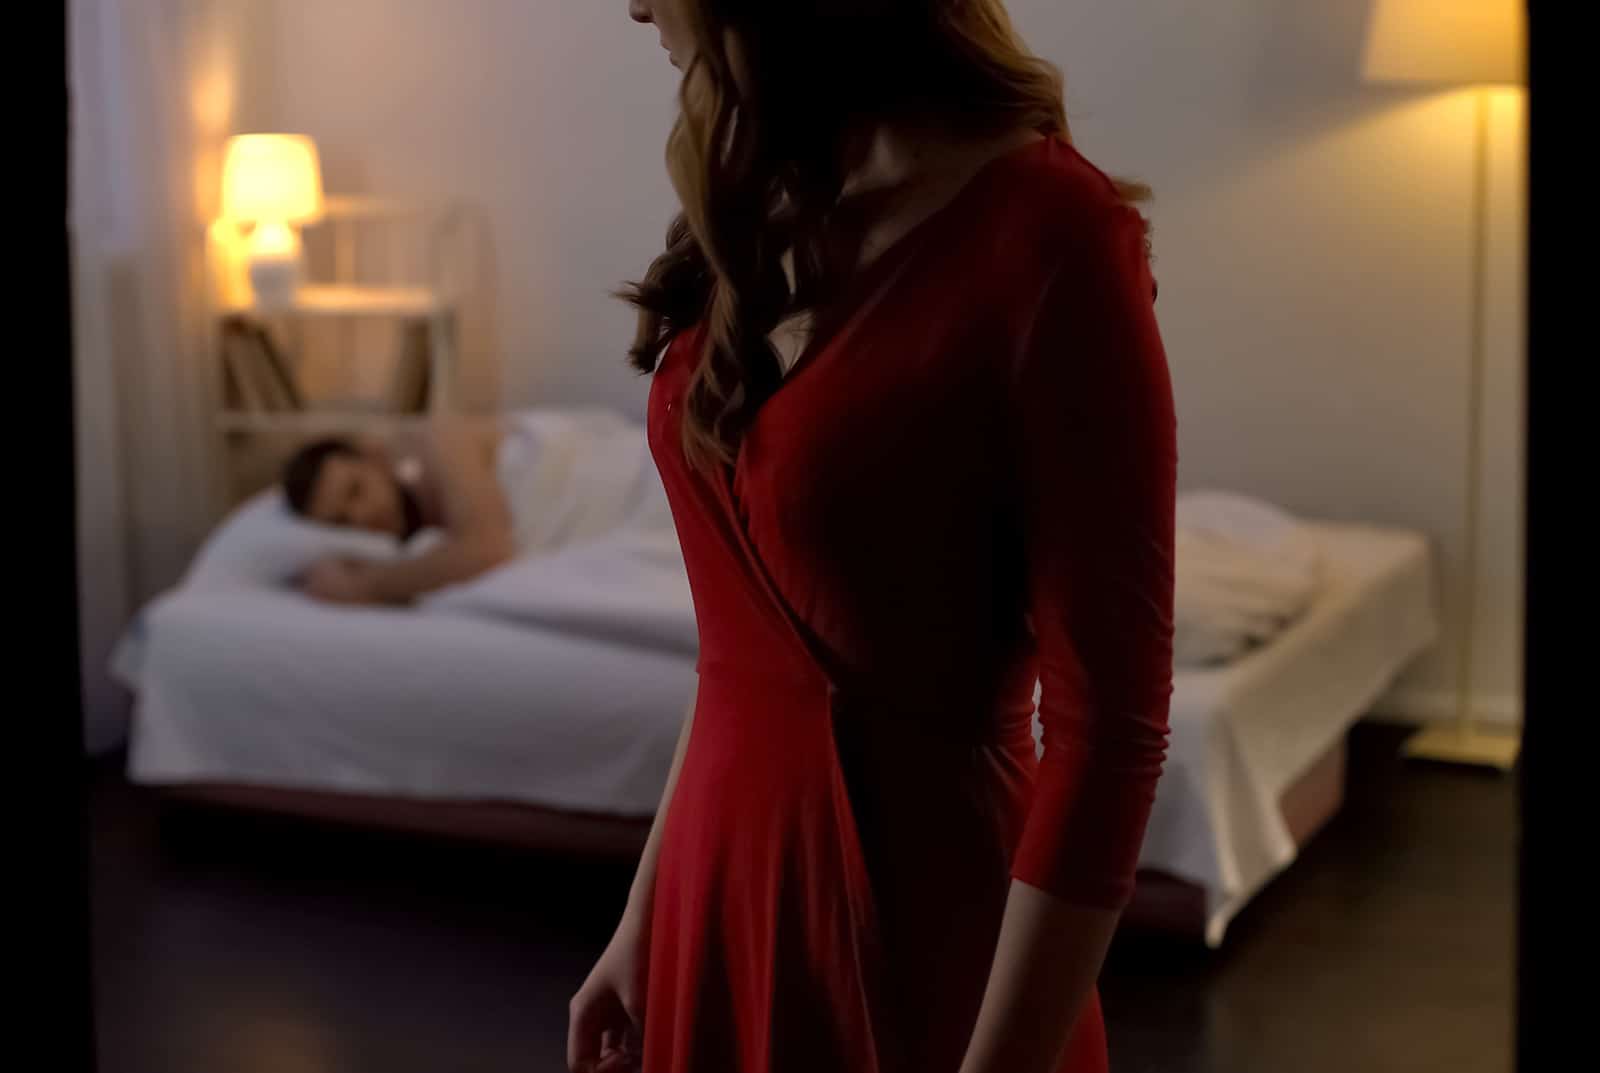 eine Frau in einem roten Kleid verlässt den Raum, während ein Mann in einem Bett schläft